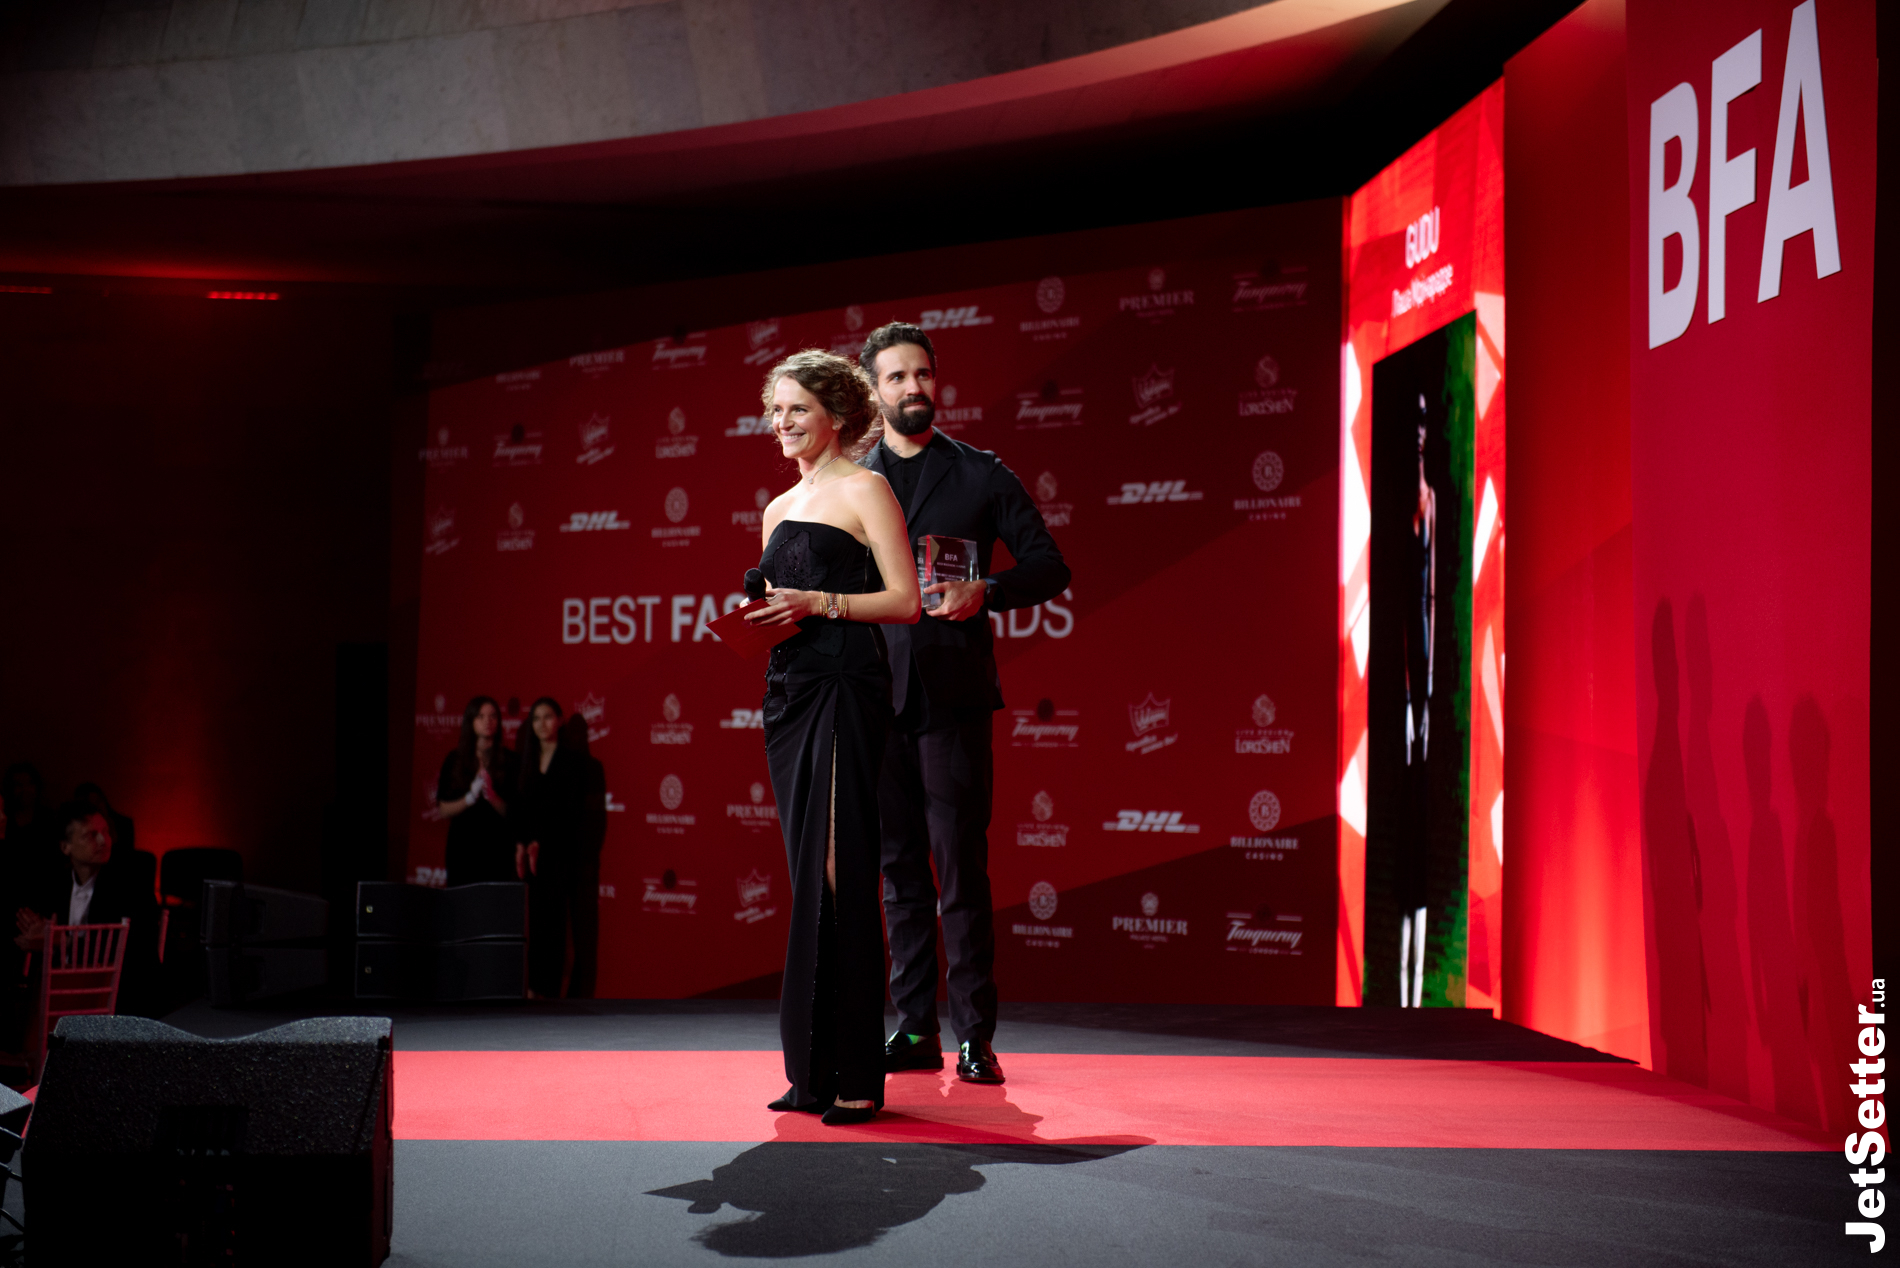 Best Fashion Awards 2021: церемонія та преможці